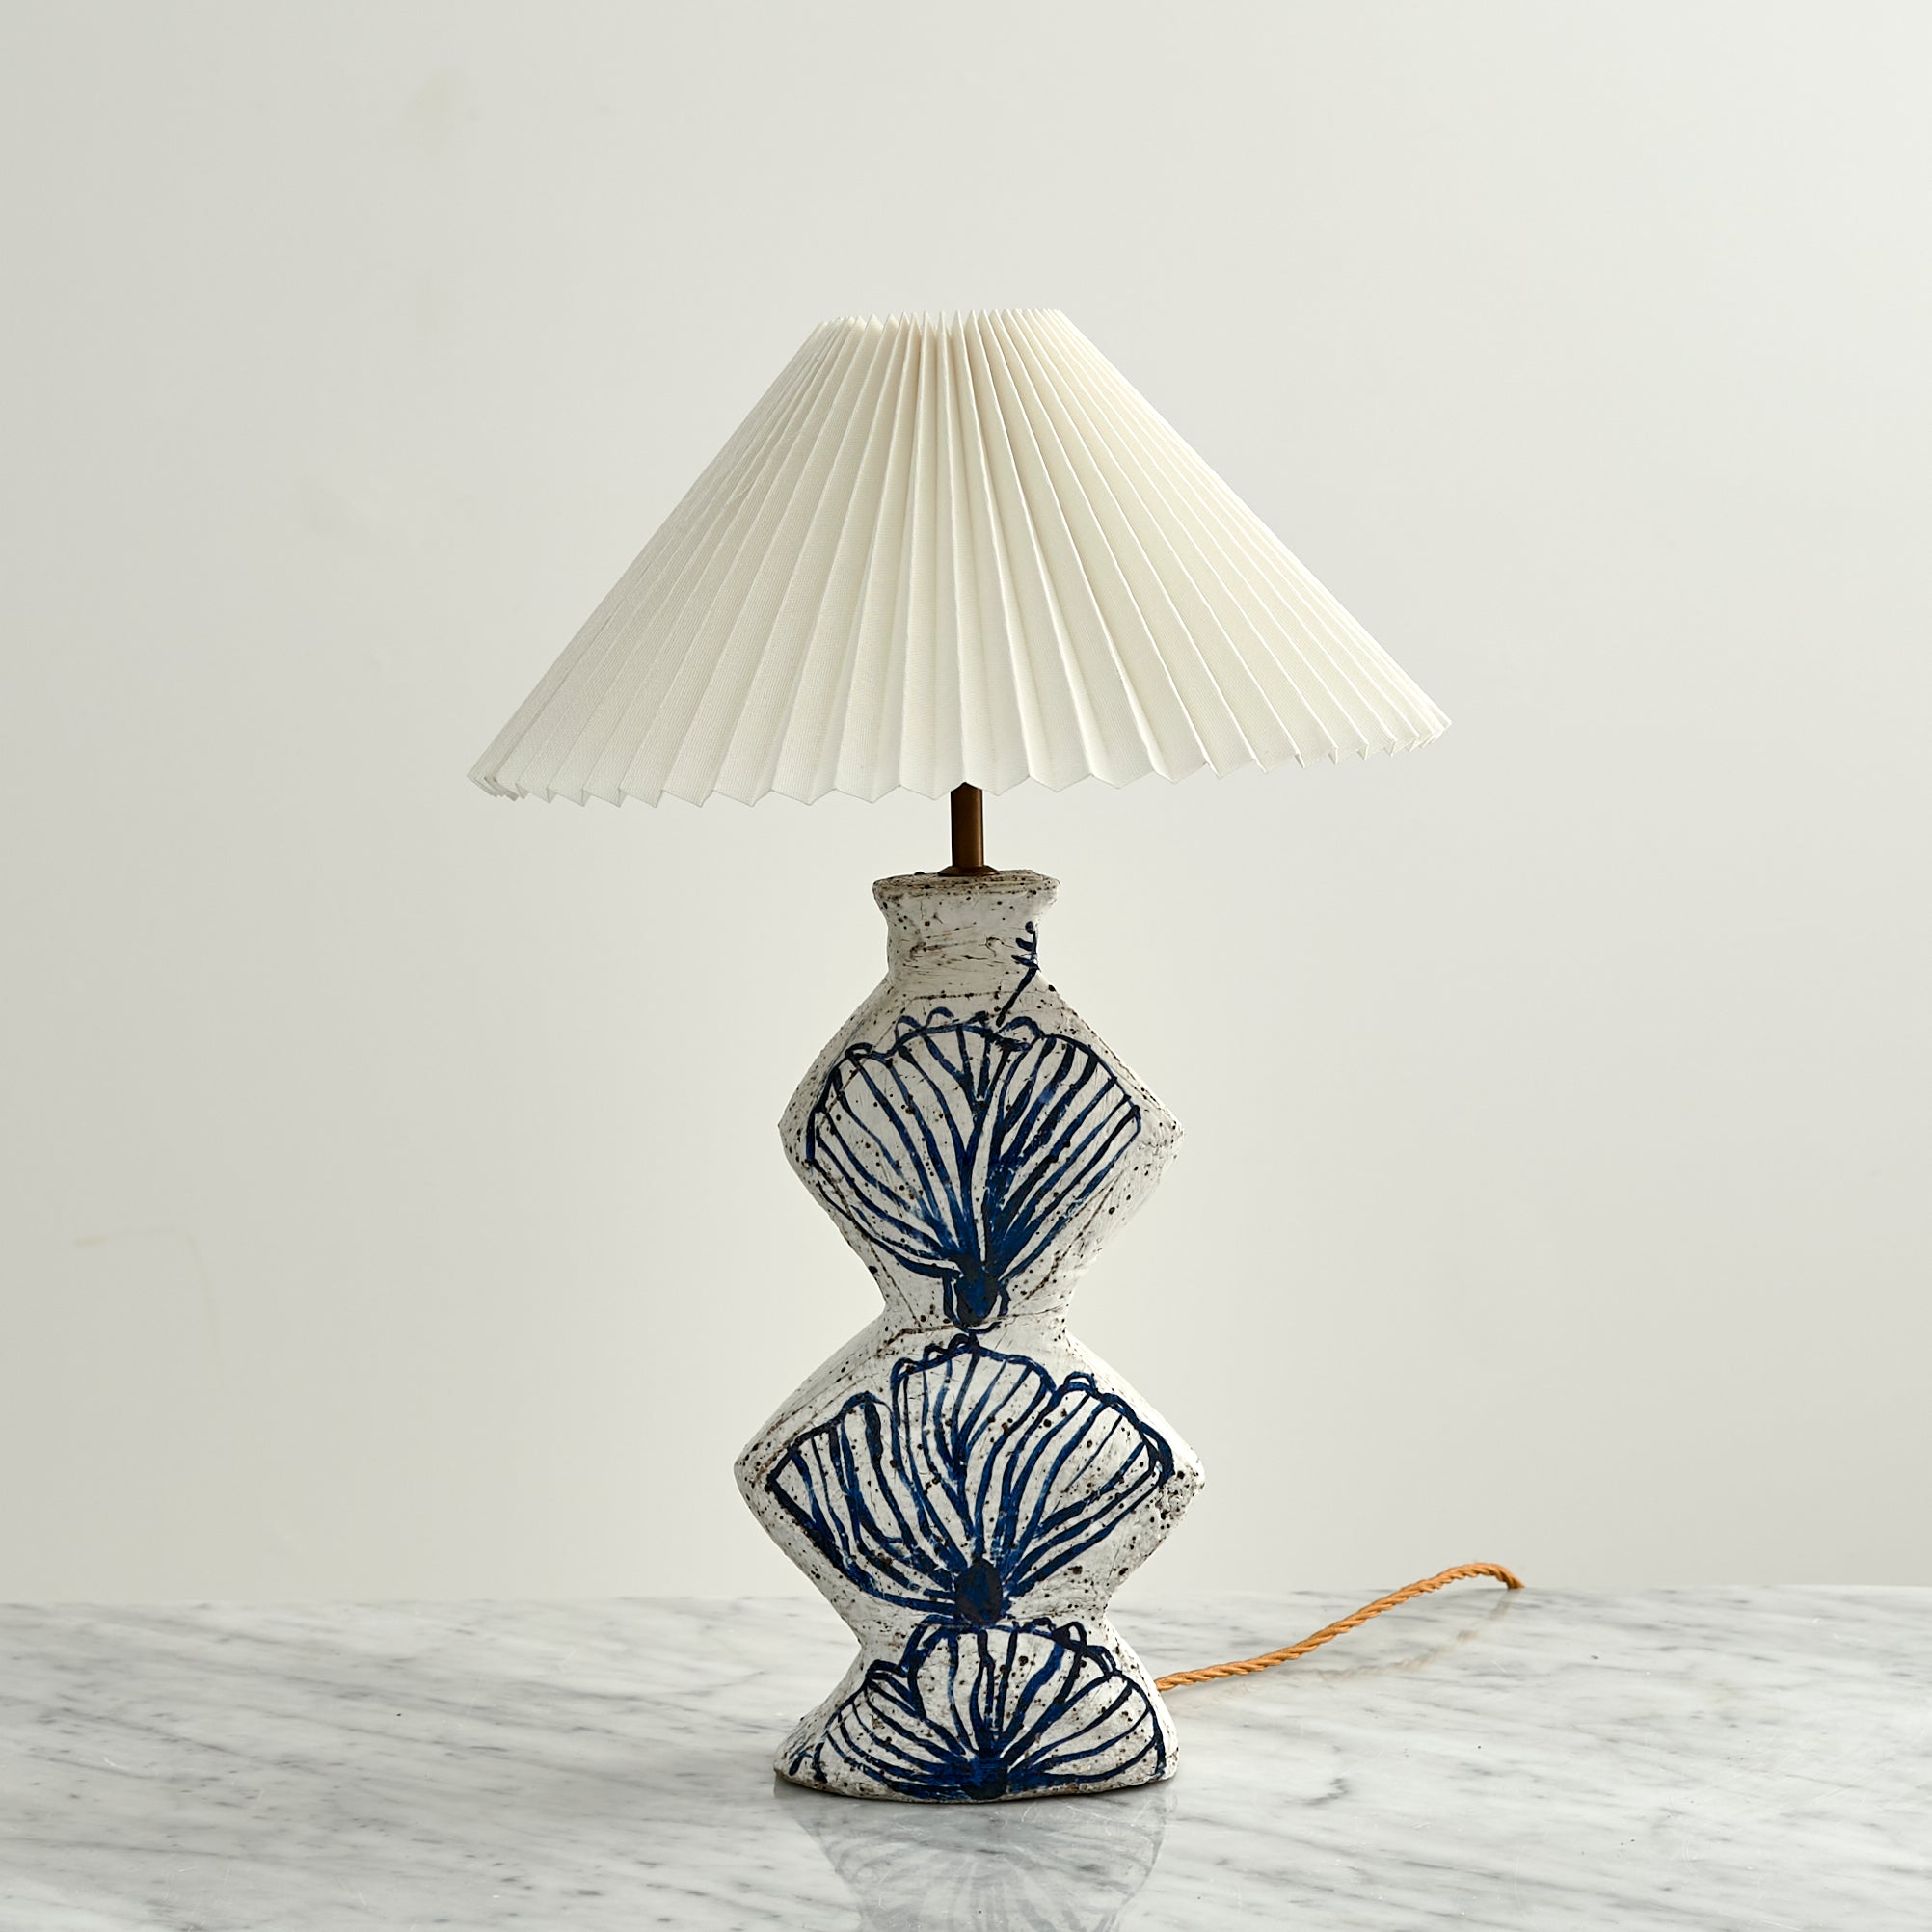 Lamp No. 9